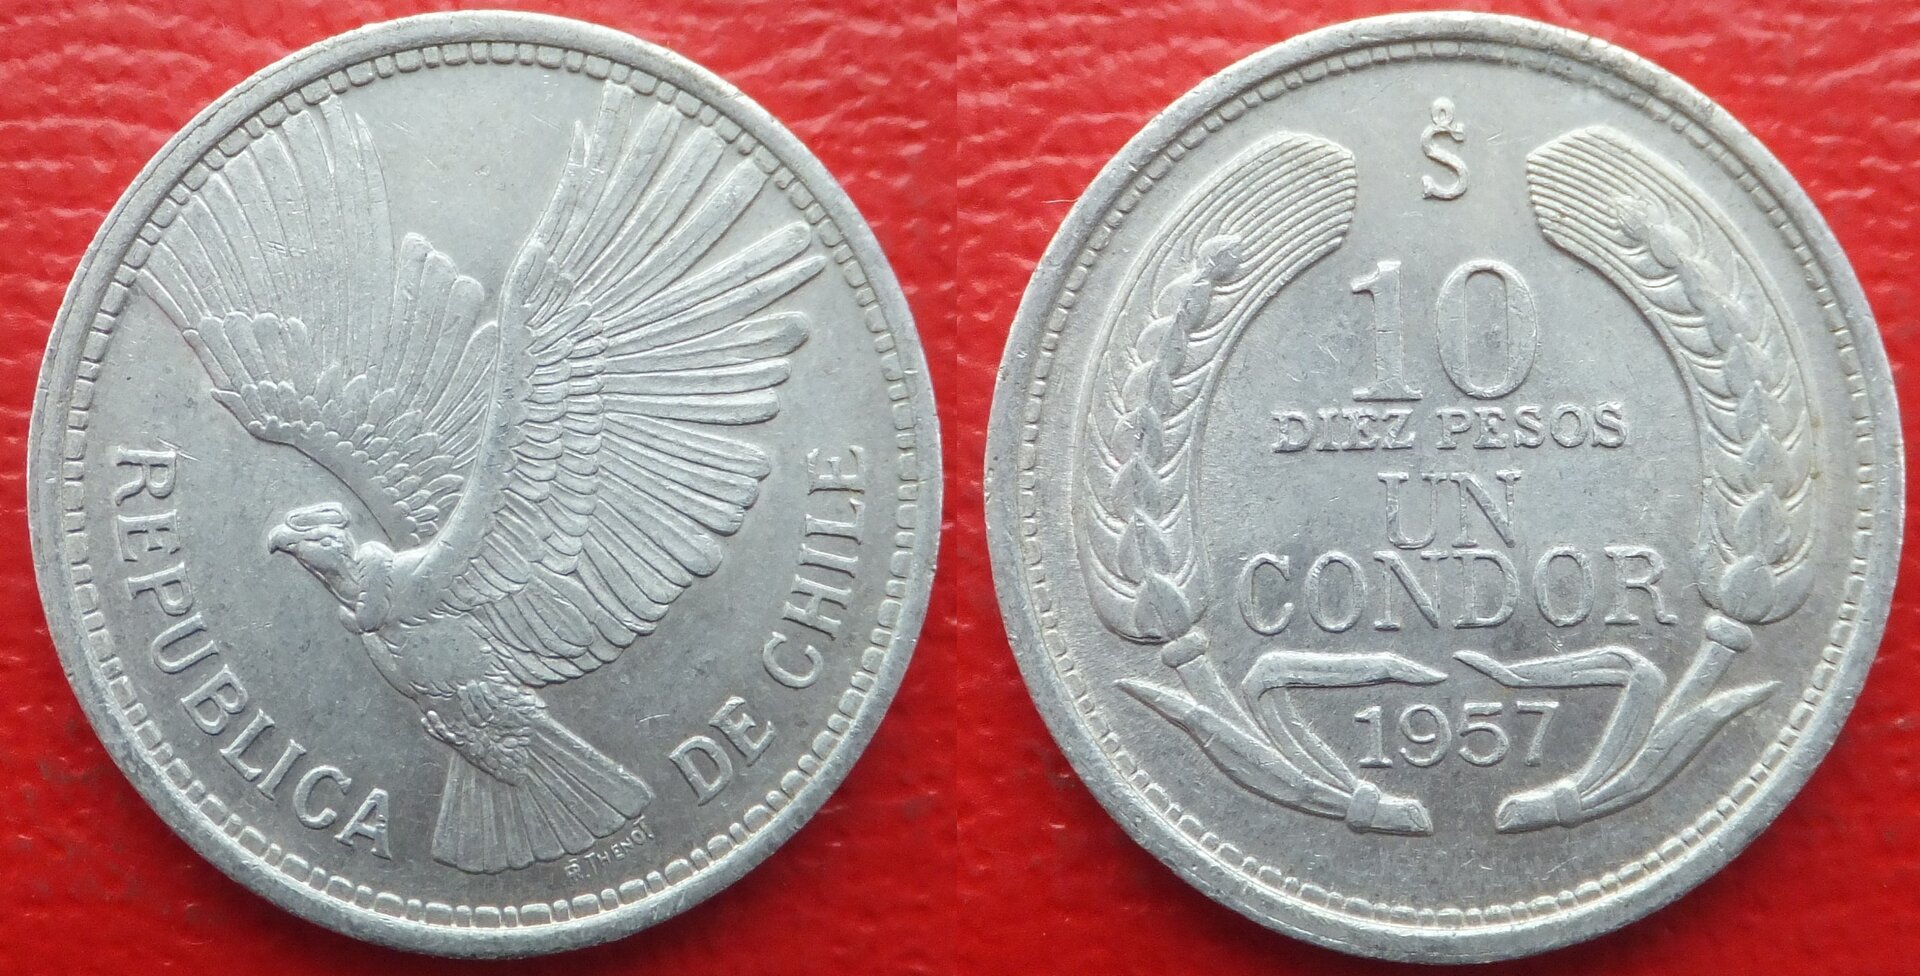 Chile 10 pesos 1957 (3).jpg